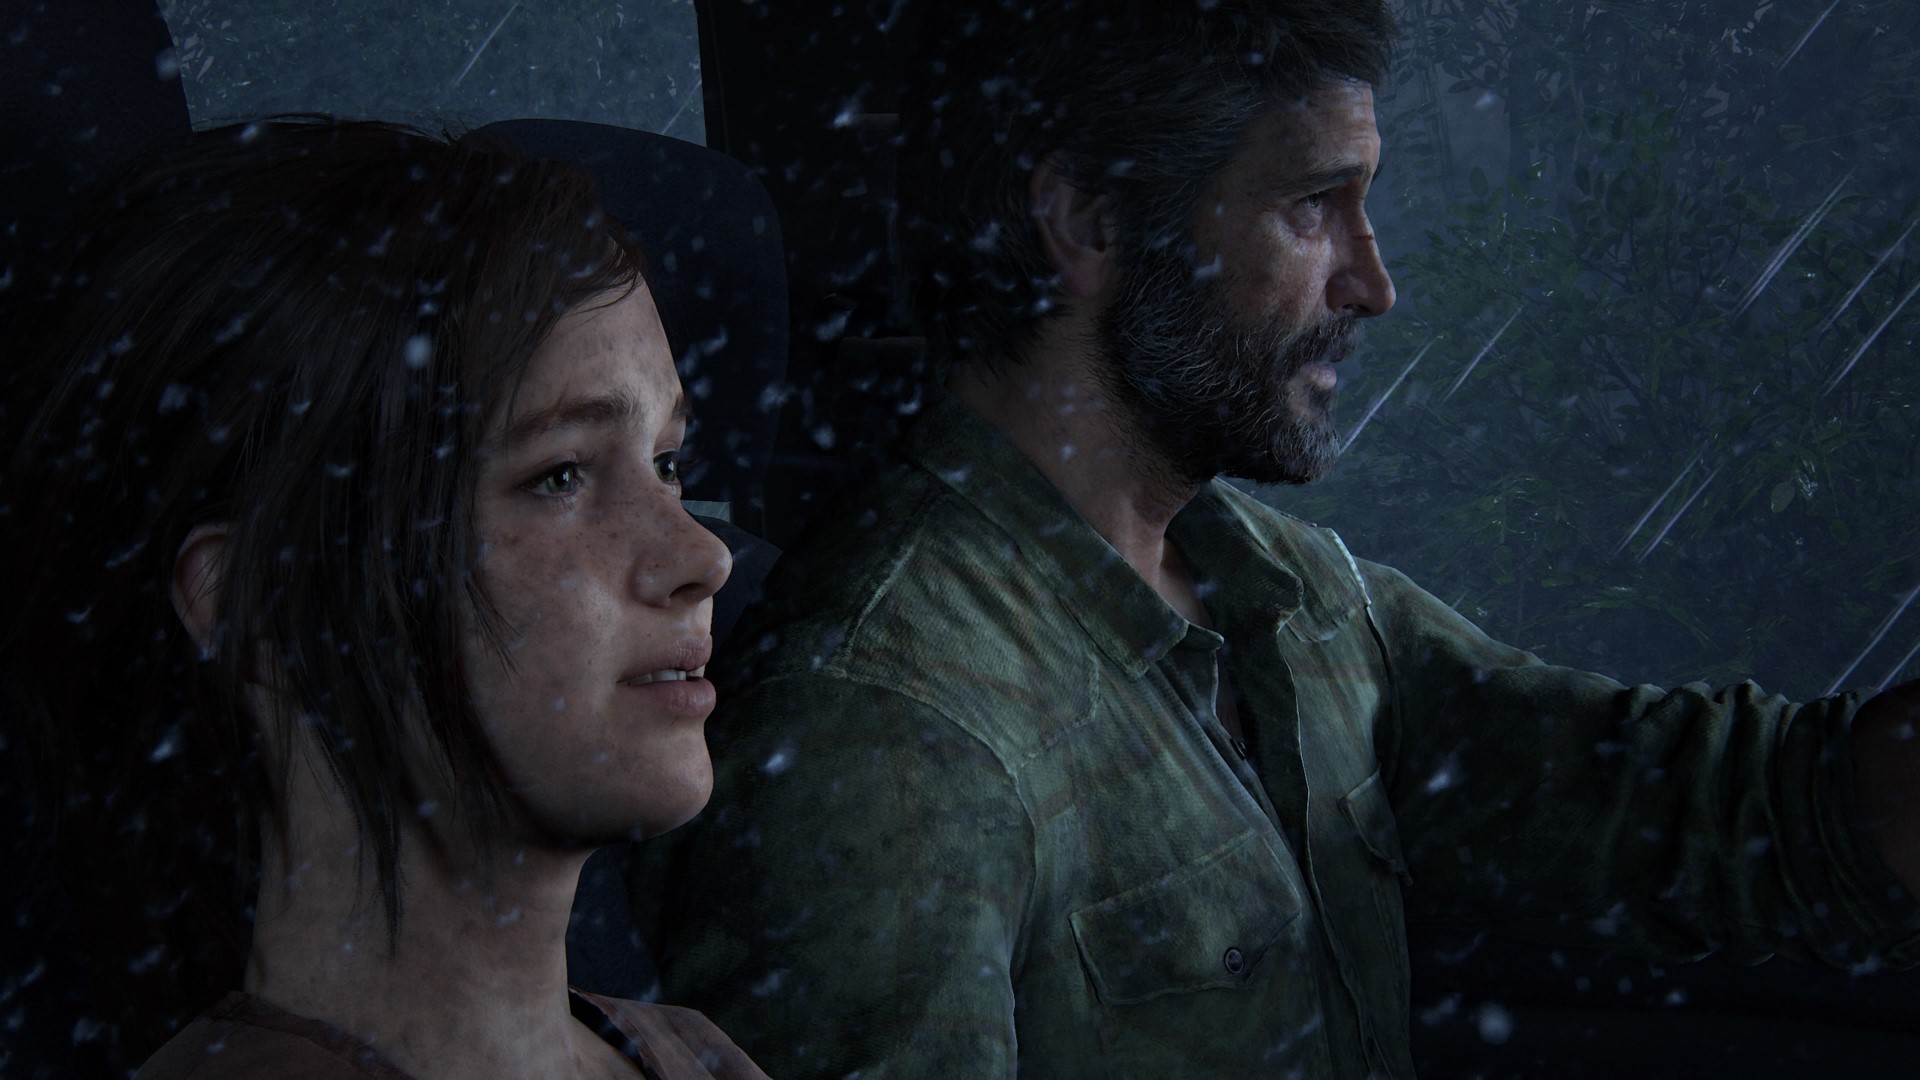 The Last of Us Parte 2 - Quanto tempo você leva para terminar o jogo